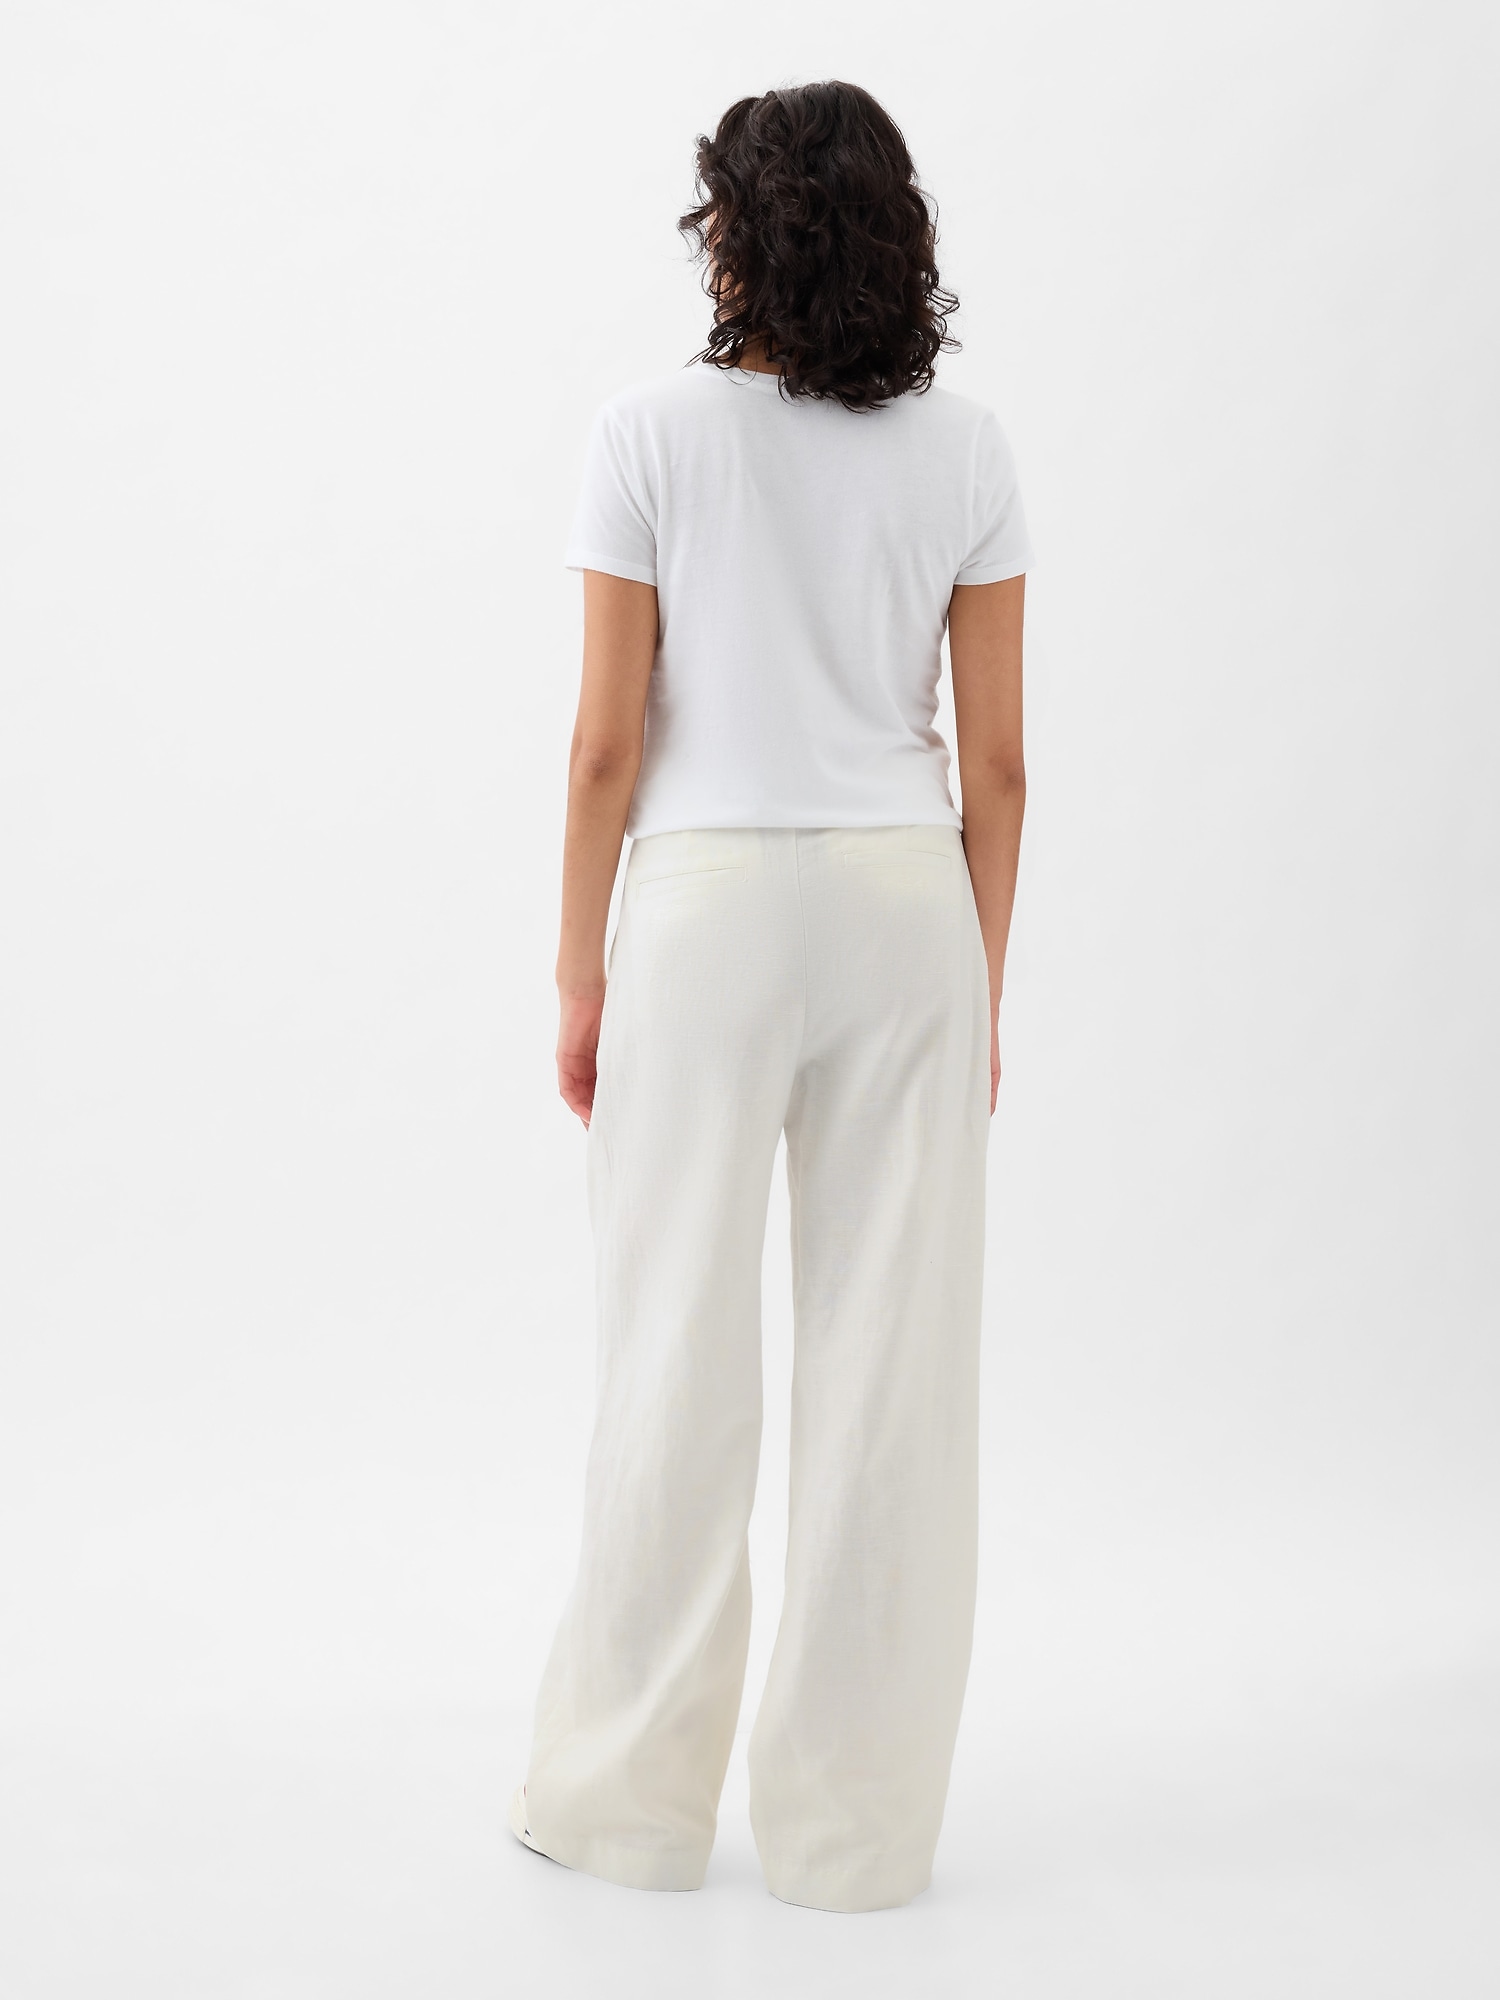 100% Premium Linen Set Linen Bralette With Pants Bralette for Women Long  Linen Pants Linen Clothing Gift for Her LAA160 -  Canada